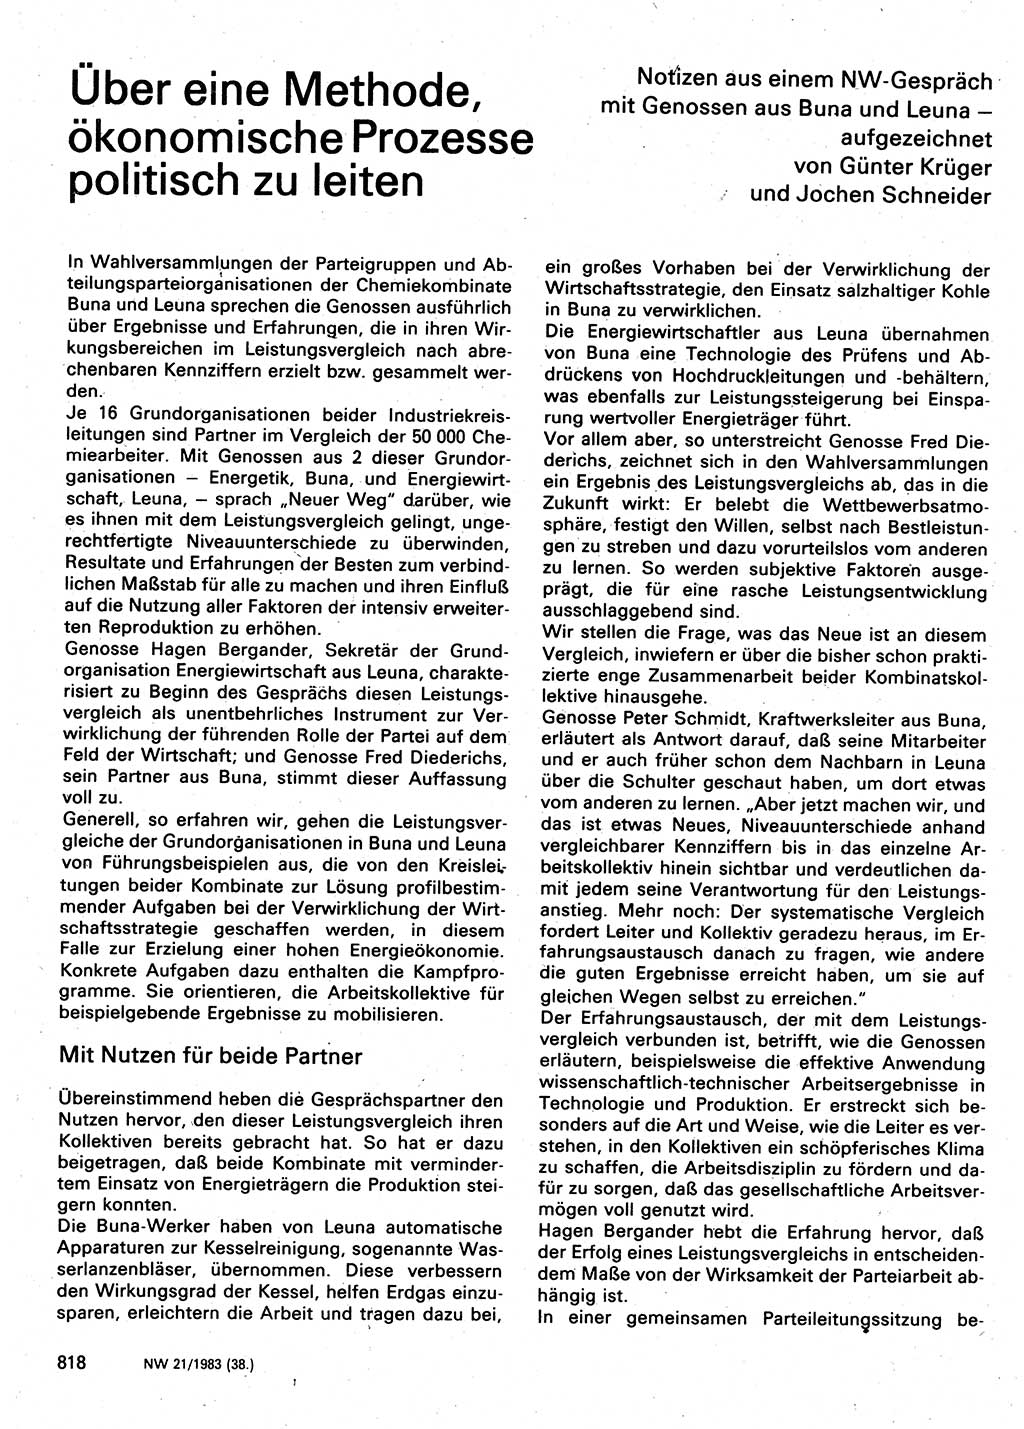 Neuer Weg (NW), Organ des Zentralkomitees (ZK) der SED (Sozialistische Einheitspartei Deutschlands) für Fragen des Parteilebens, 38. Jahrgang [Deutsche Demokratische Republik (DDR)] 1983, Seite 818 (NW ZK SED DDR 1983, S. 818)